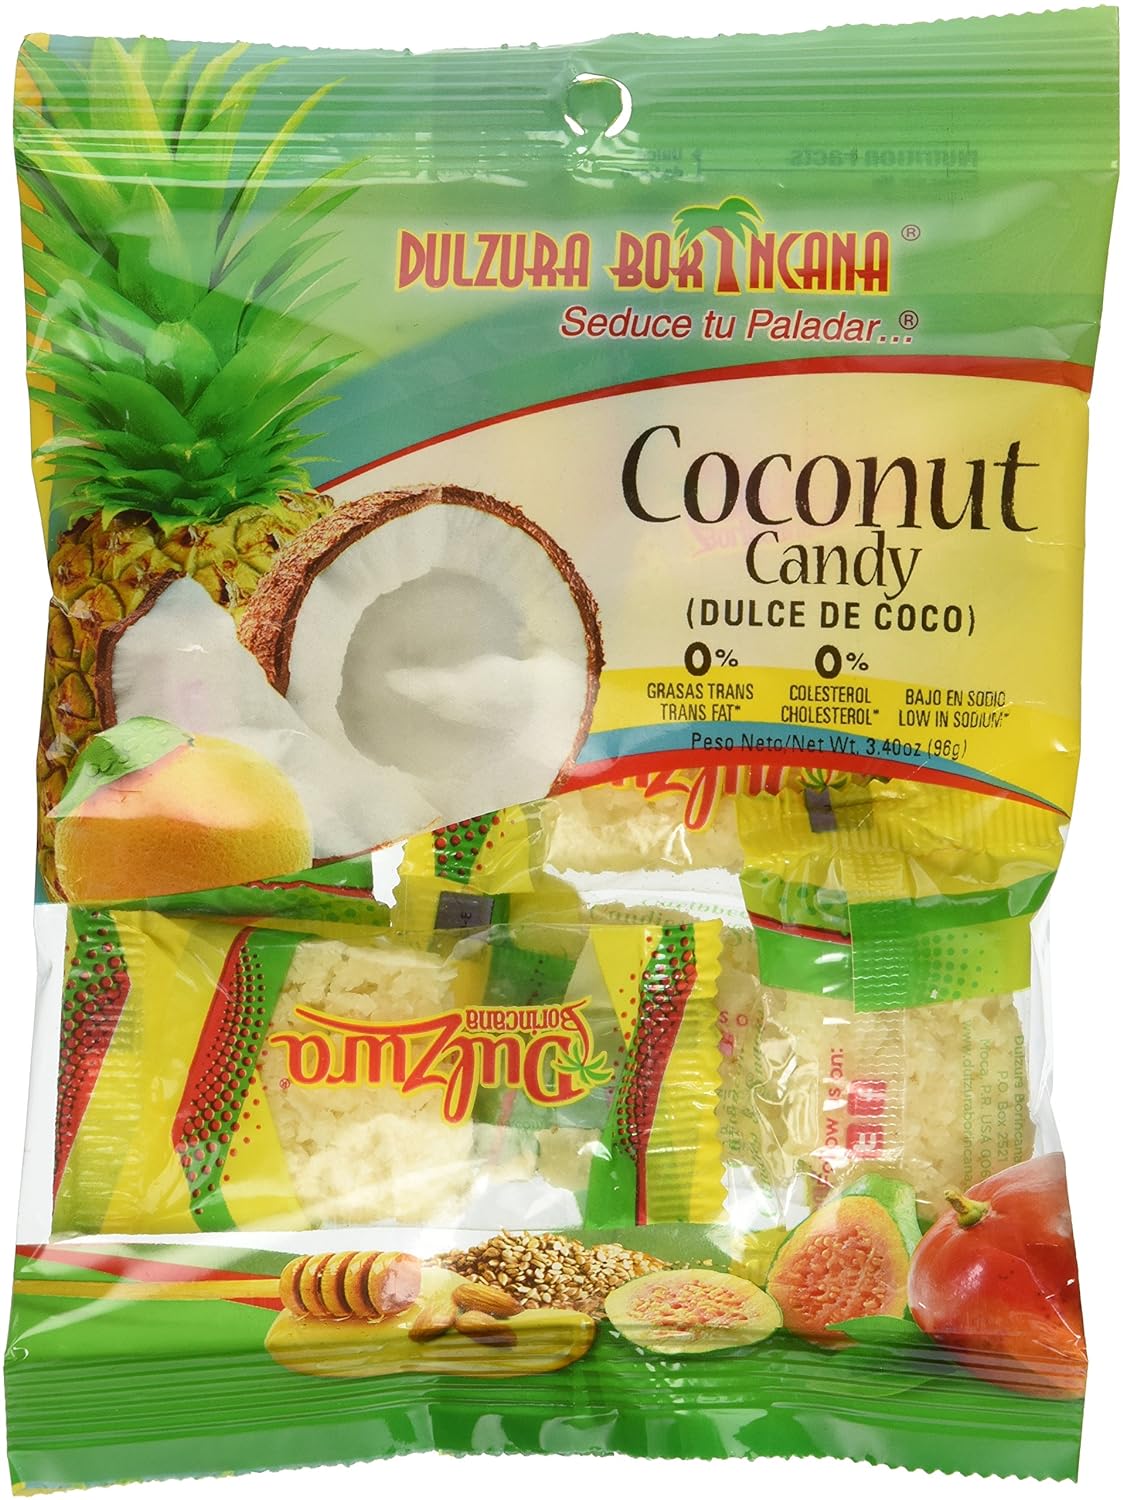 Dulzura Borincana Coconut Candy - Dulce De Coco Puerto Rican Candies By Dulzura Borincana